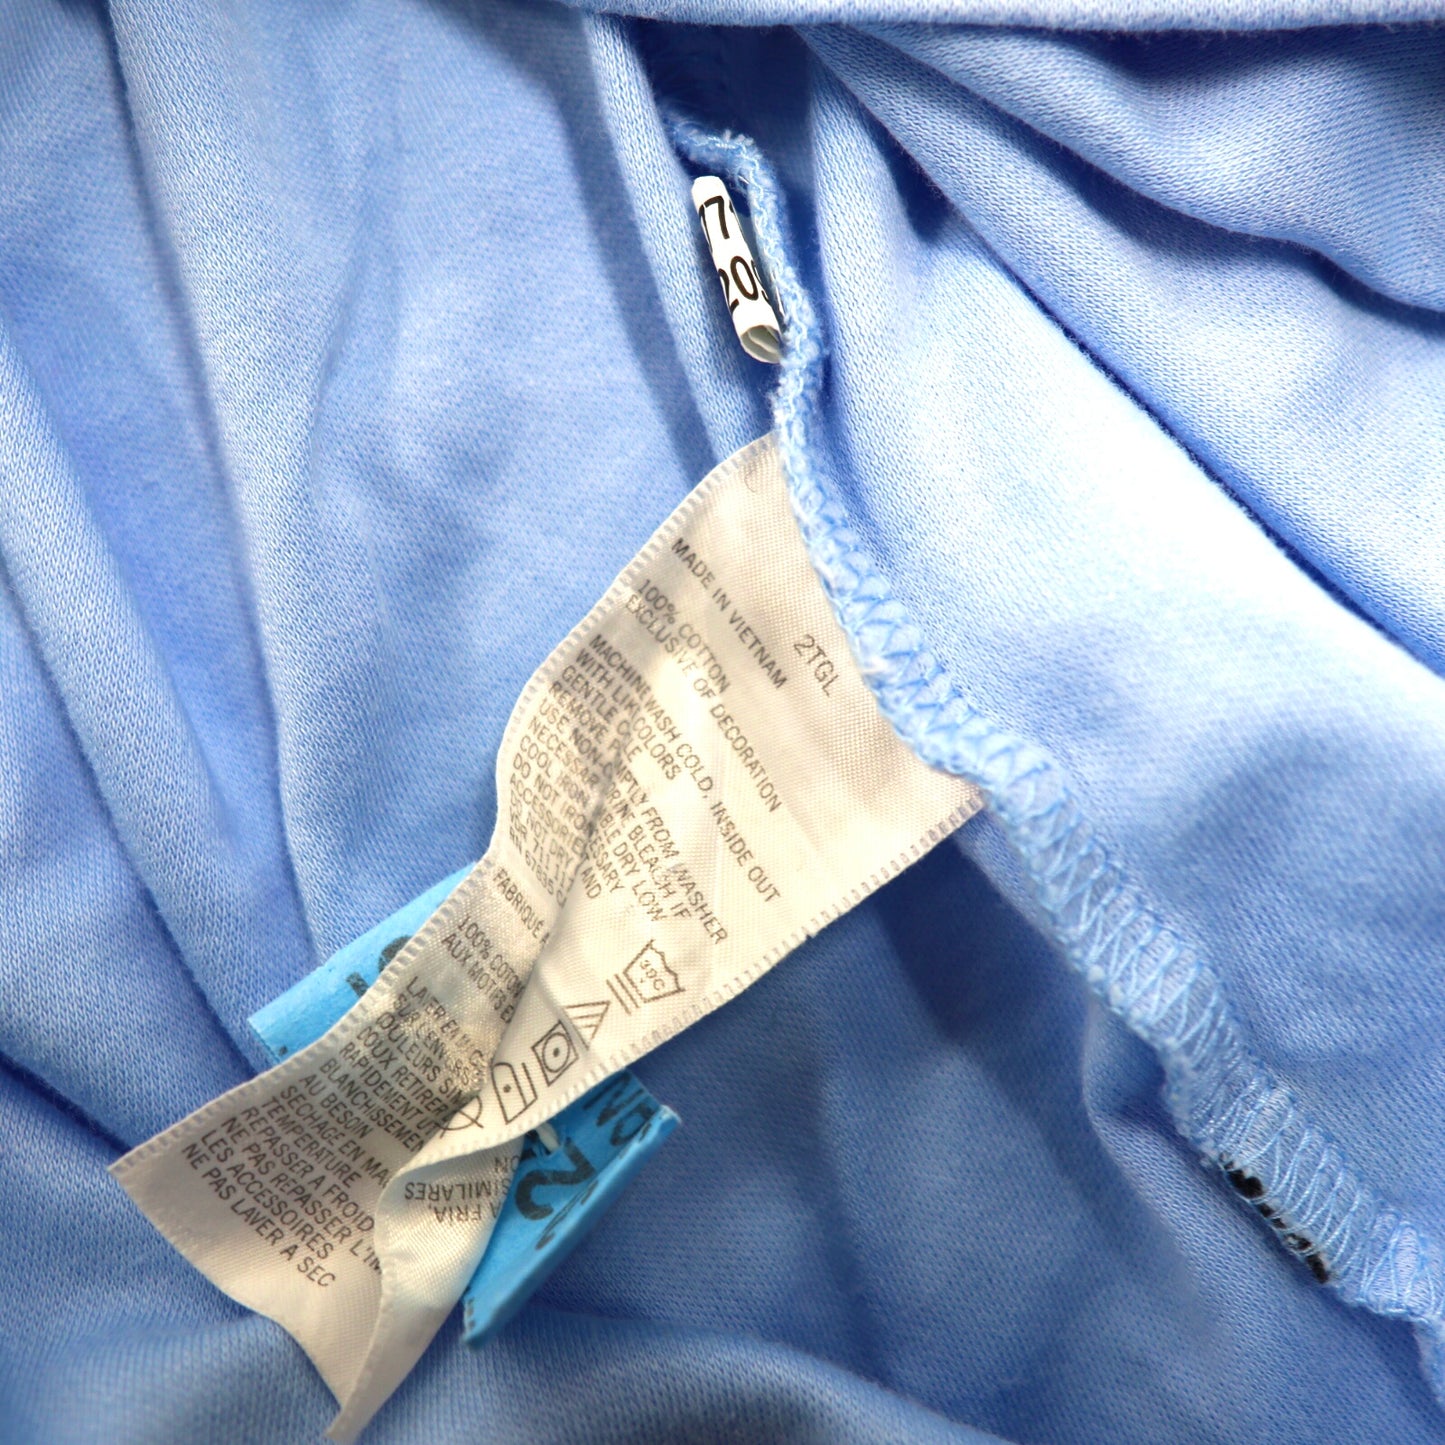 NAUTICA ポロシャツ 2XLT ブルー コットン ビッグサイズ